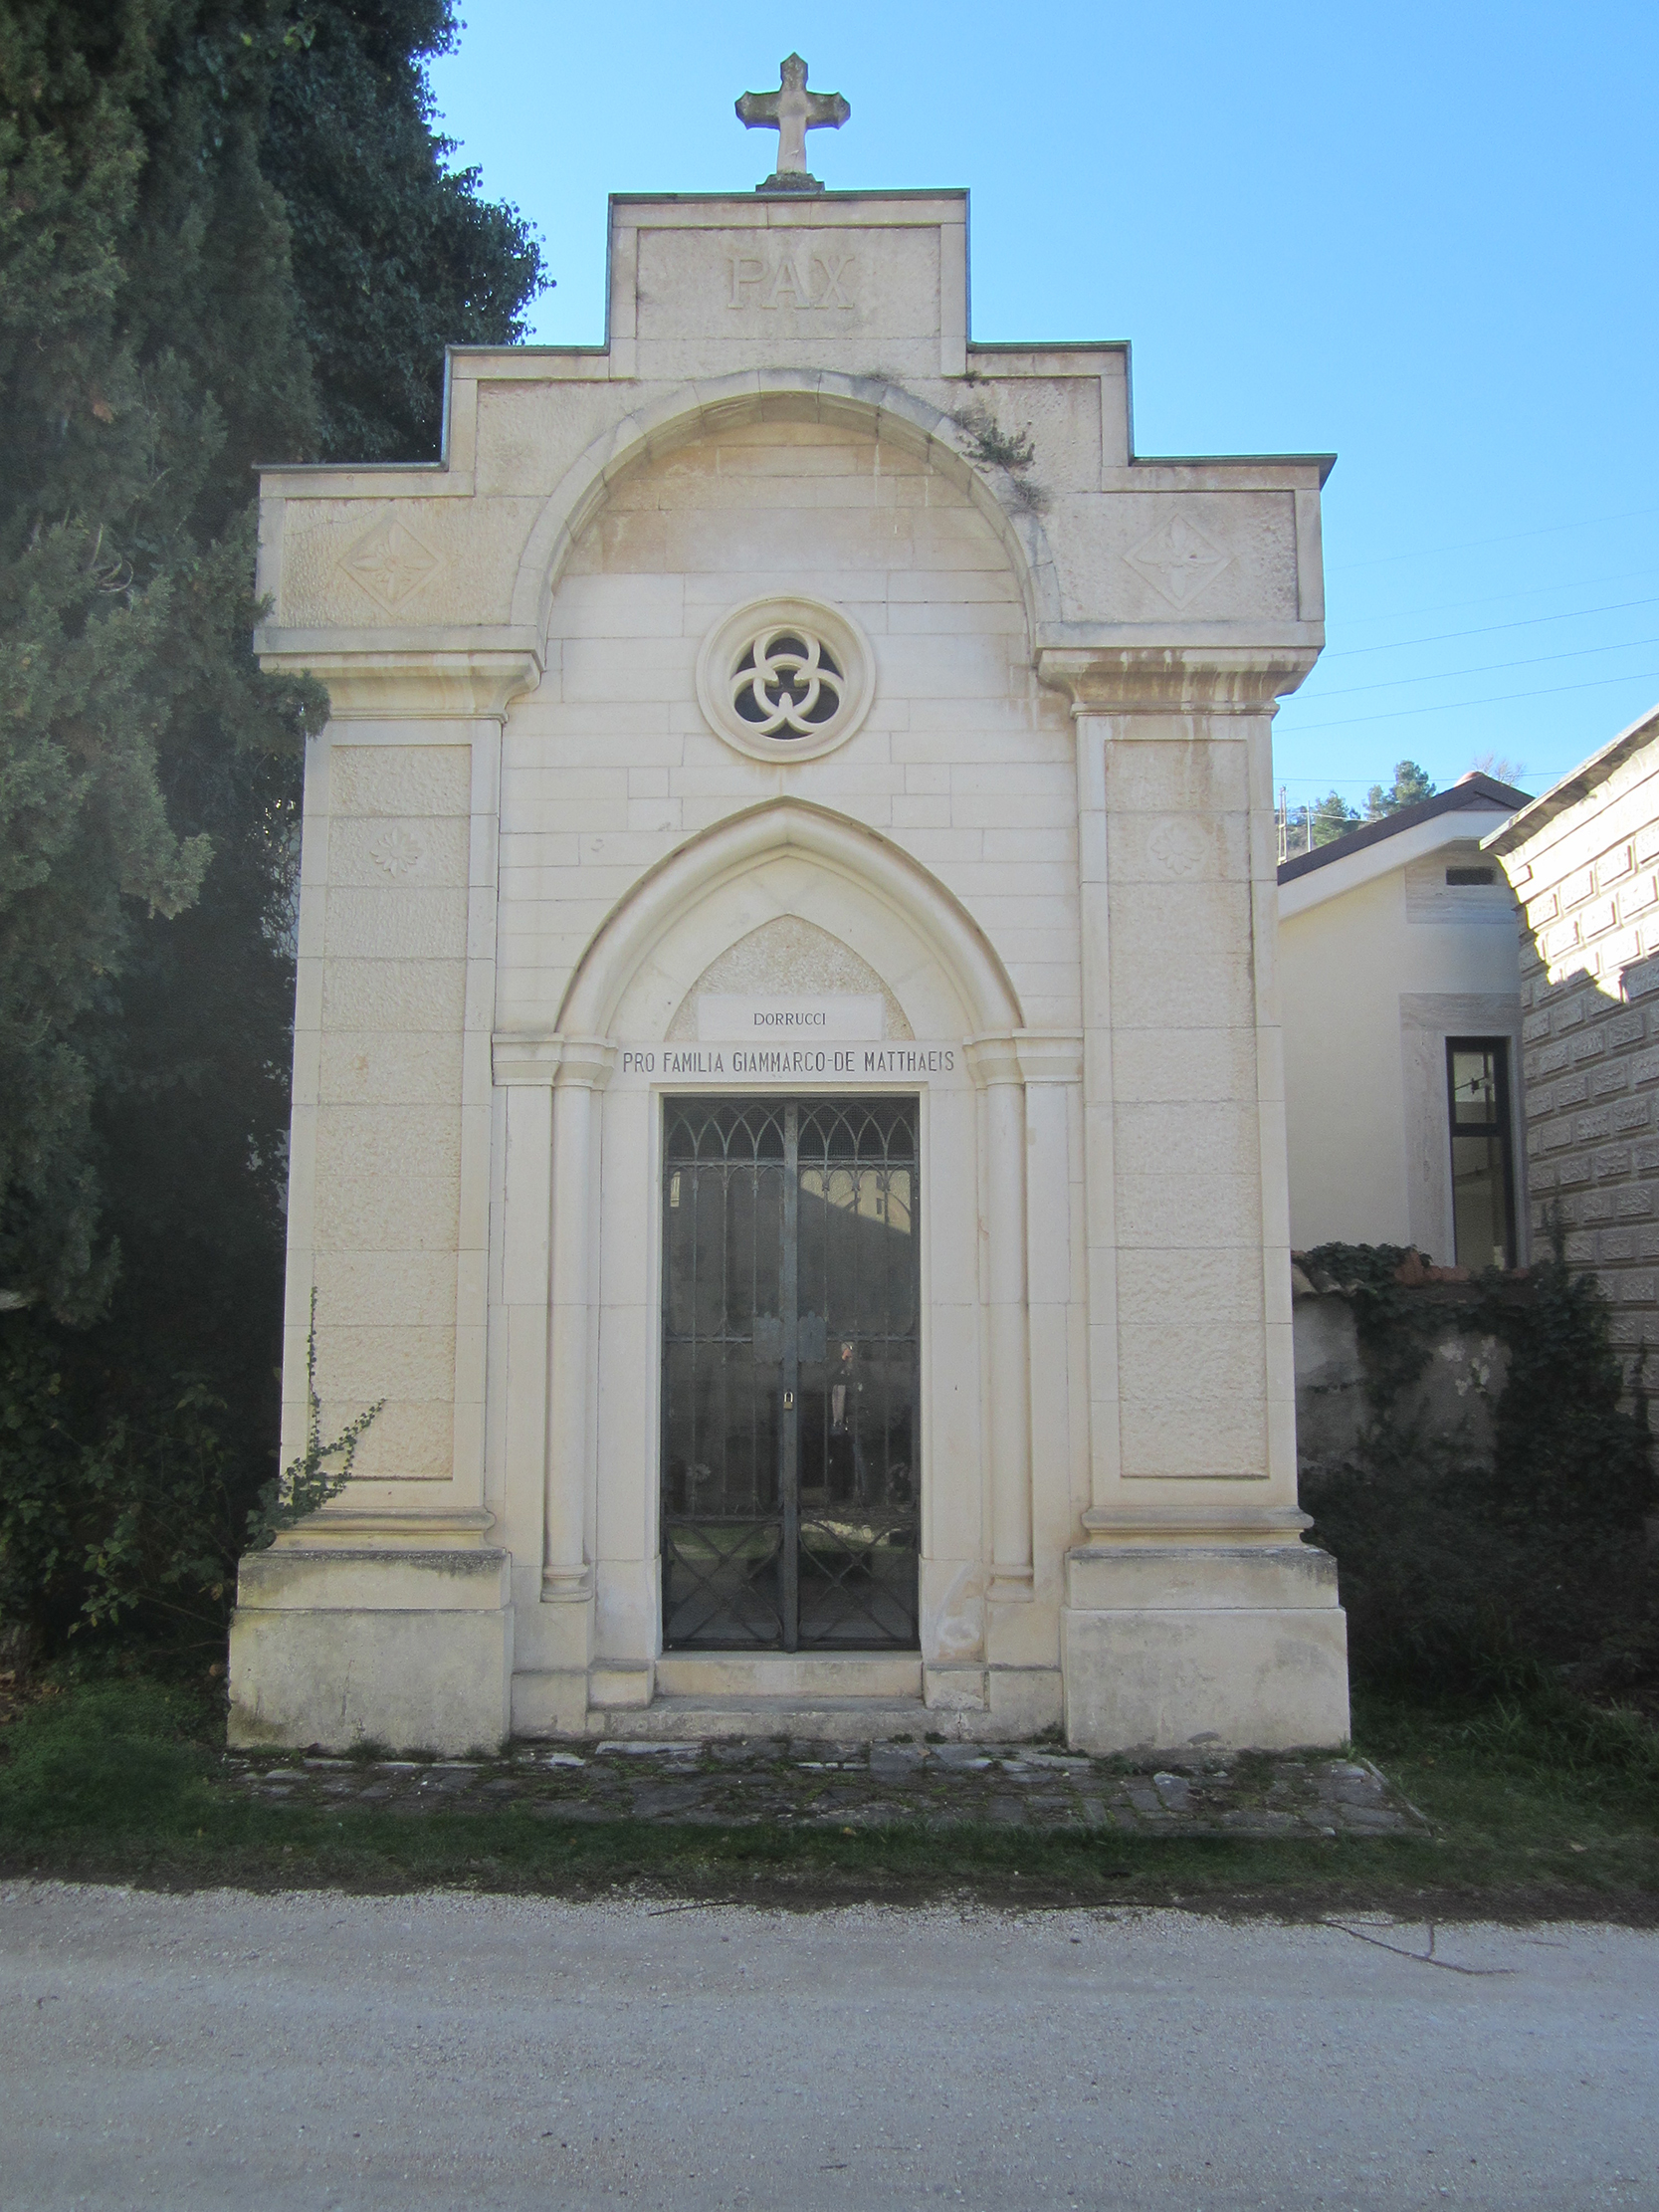 Cappella cimiteriale Pro familia Giammarco De Matthaeis e Dorucci (cimitero, monumentale) - Sulmona (AQ) 